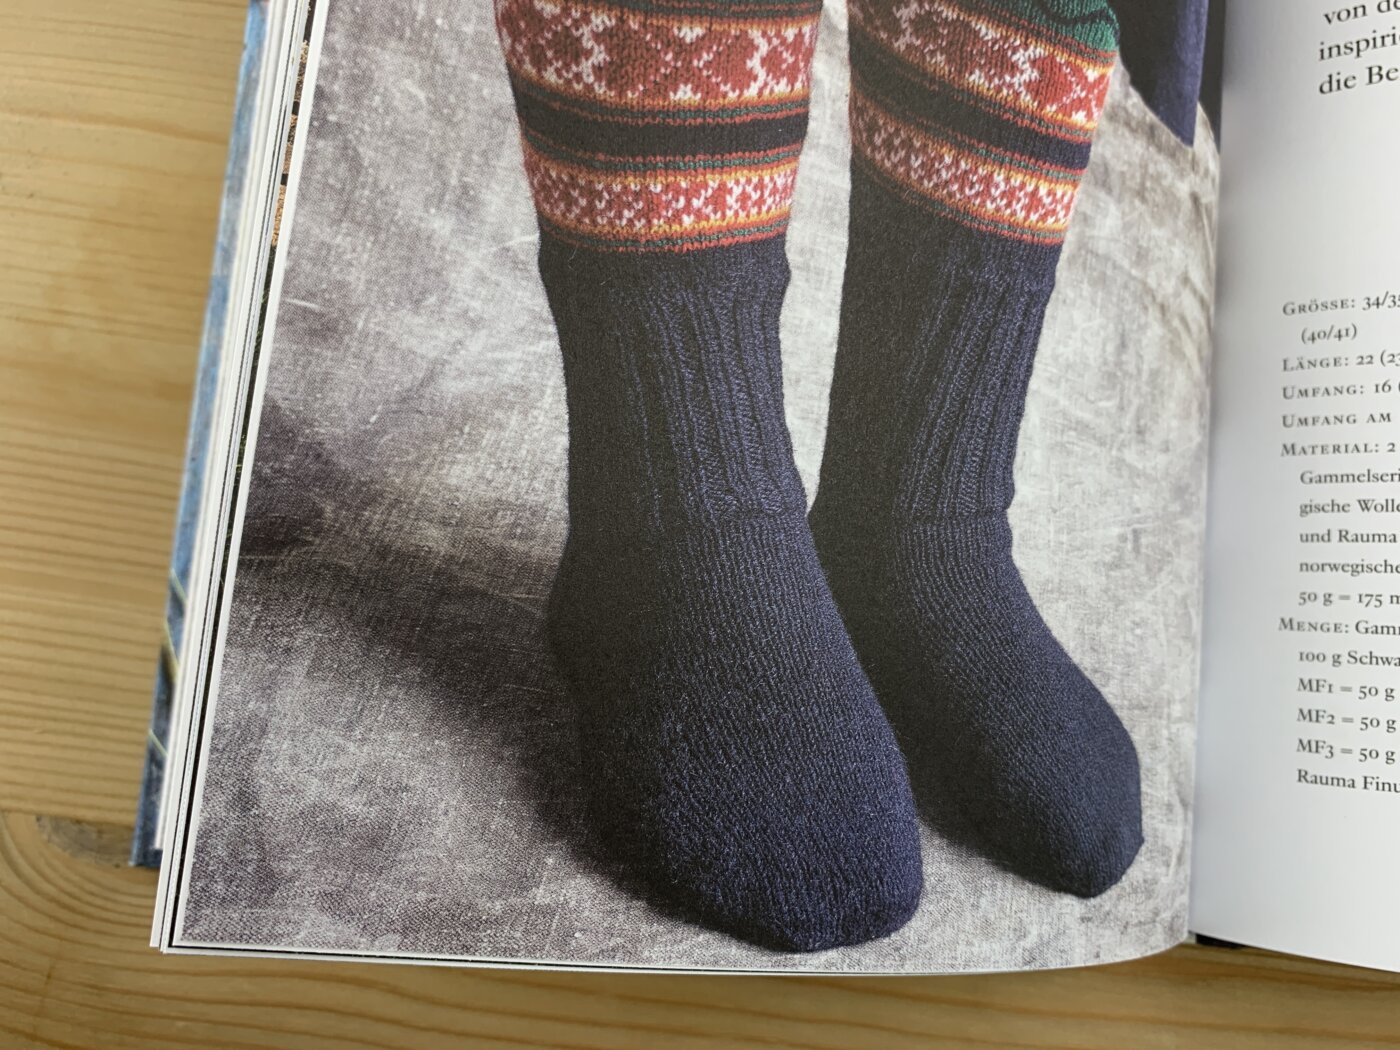 Schwedische Socken stricken - Rujkan